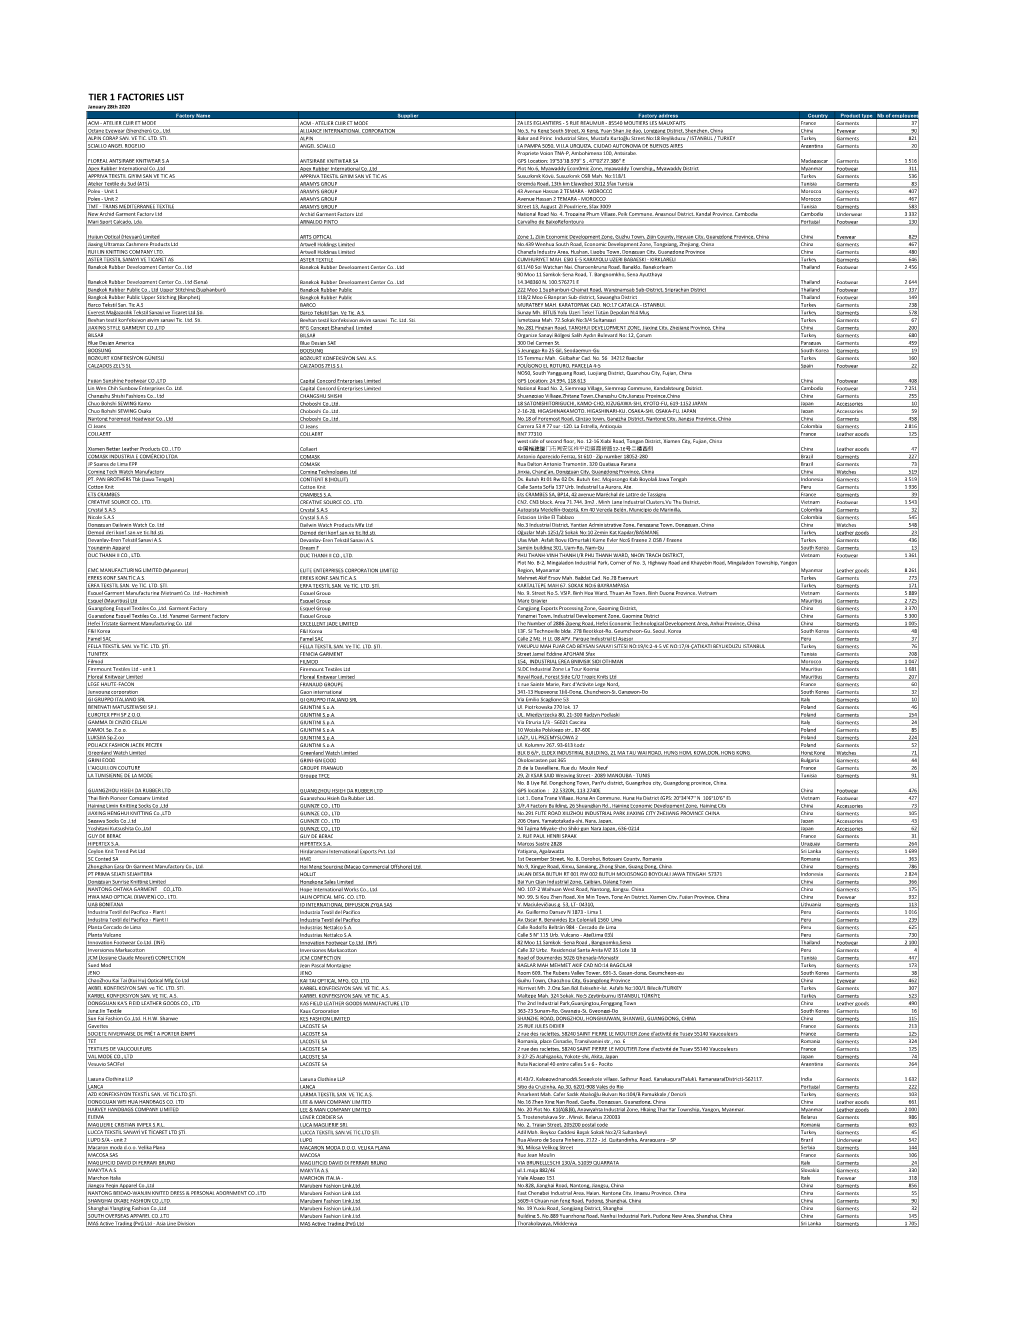 Lacoste Factories List 2020-01-28 B.Xlsx